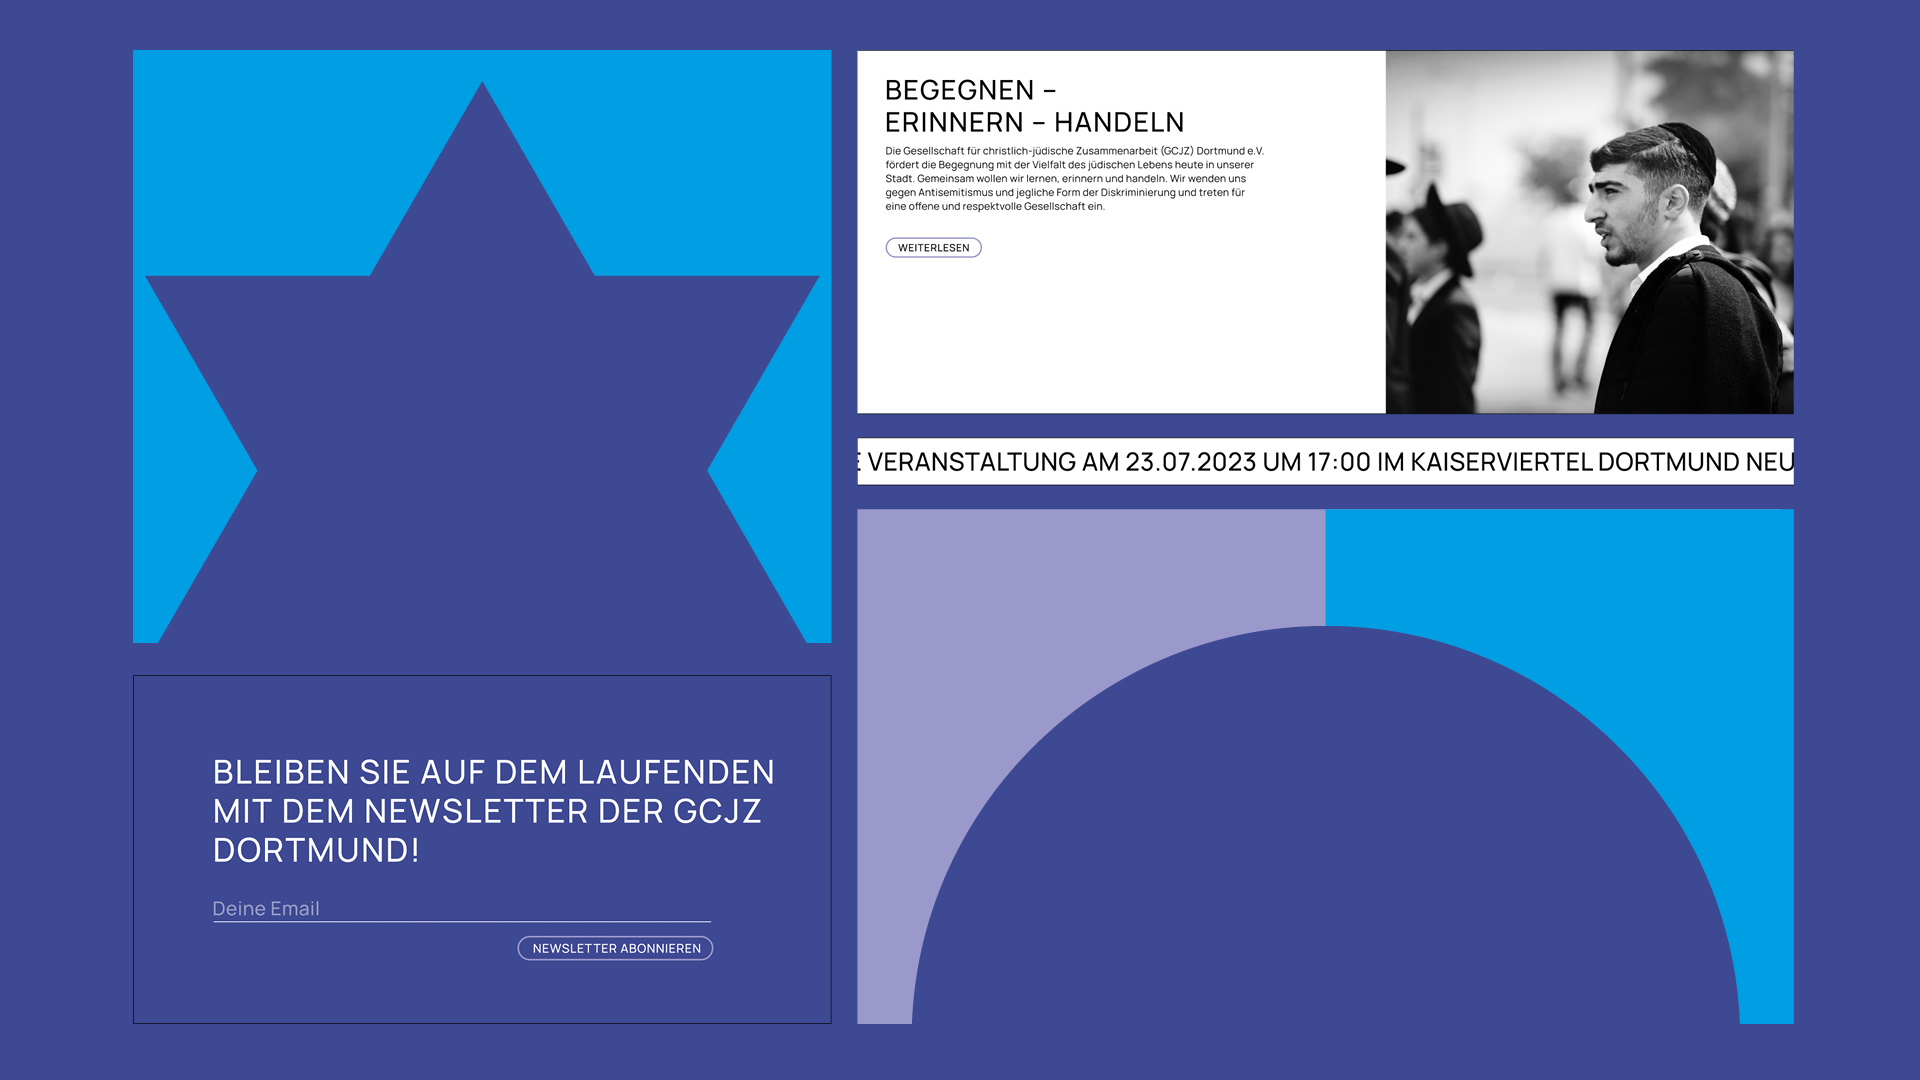 An overview of various elements of the website for the Gesellschaft für christlich-jüdische Zusammenarbeit (Society for Christian-Jewish Cooperation), designed by Florida Brand Design.